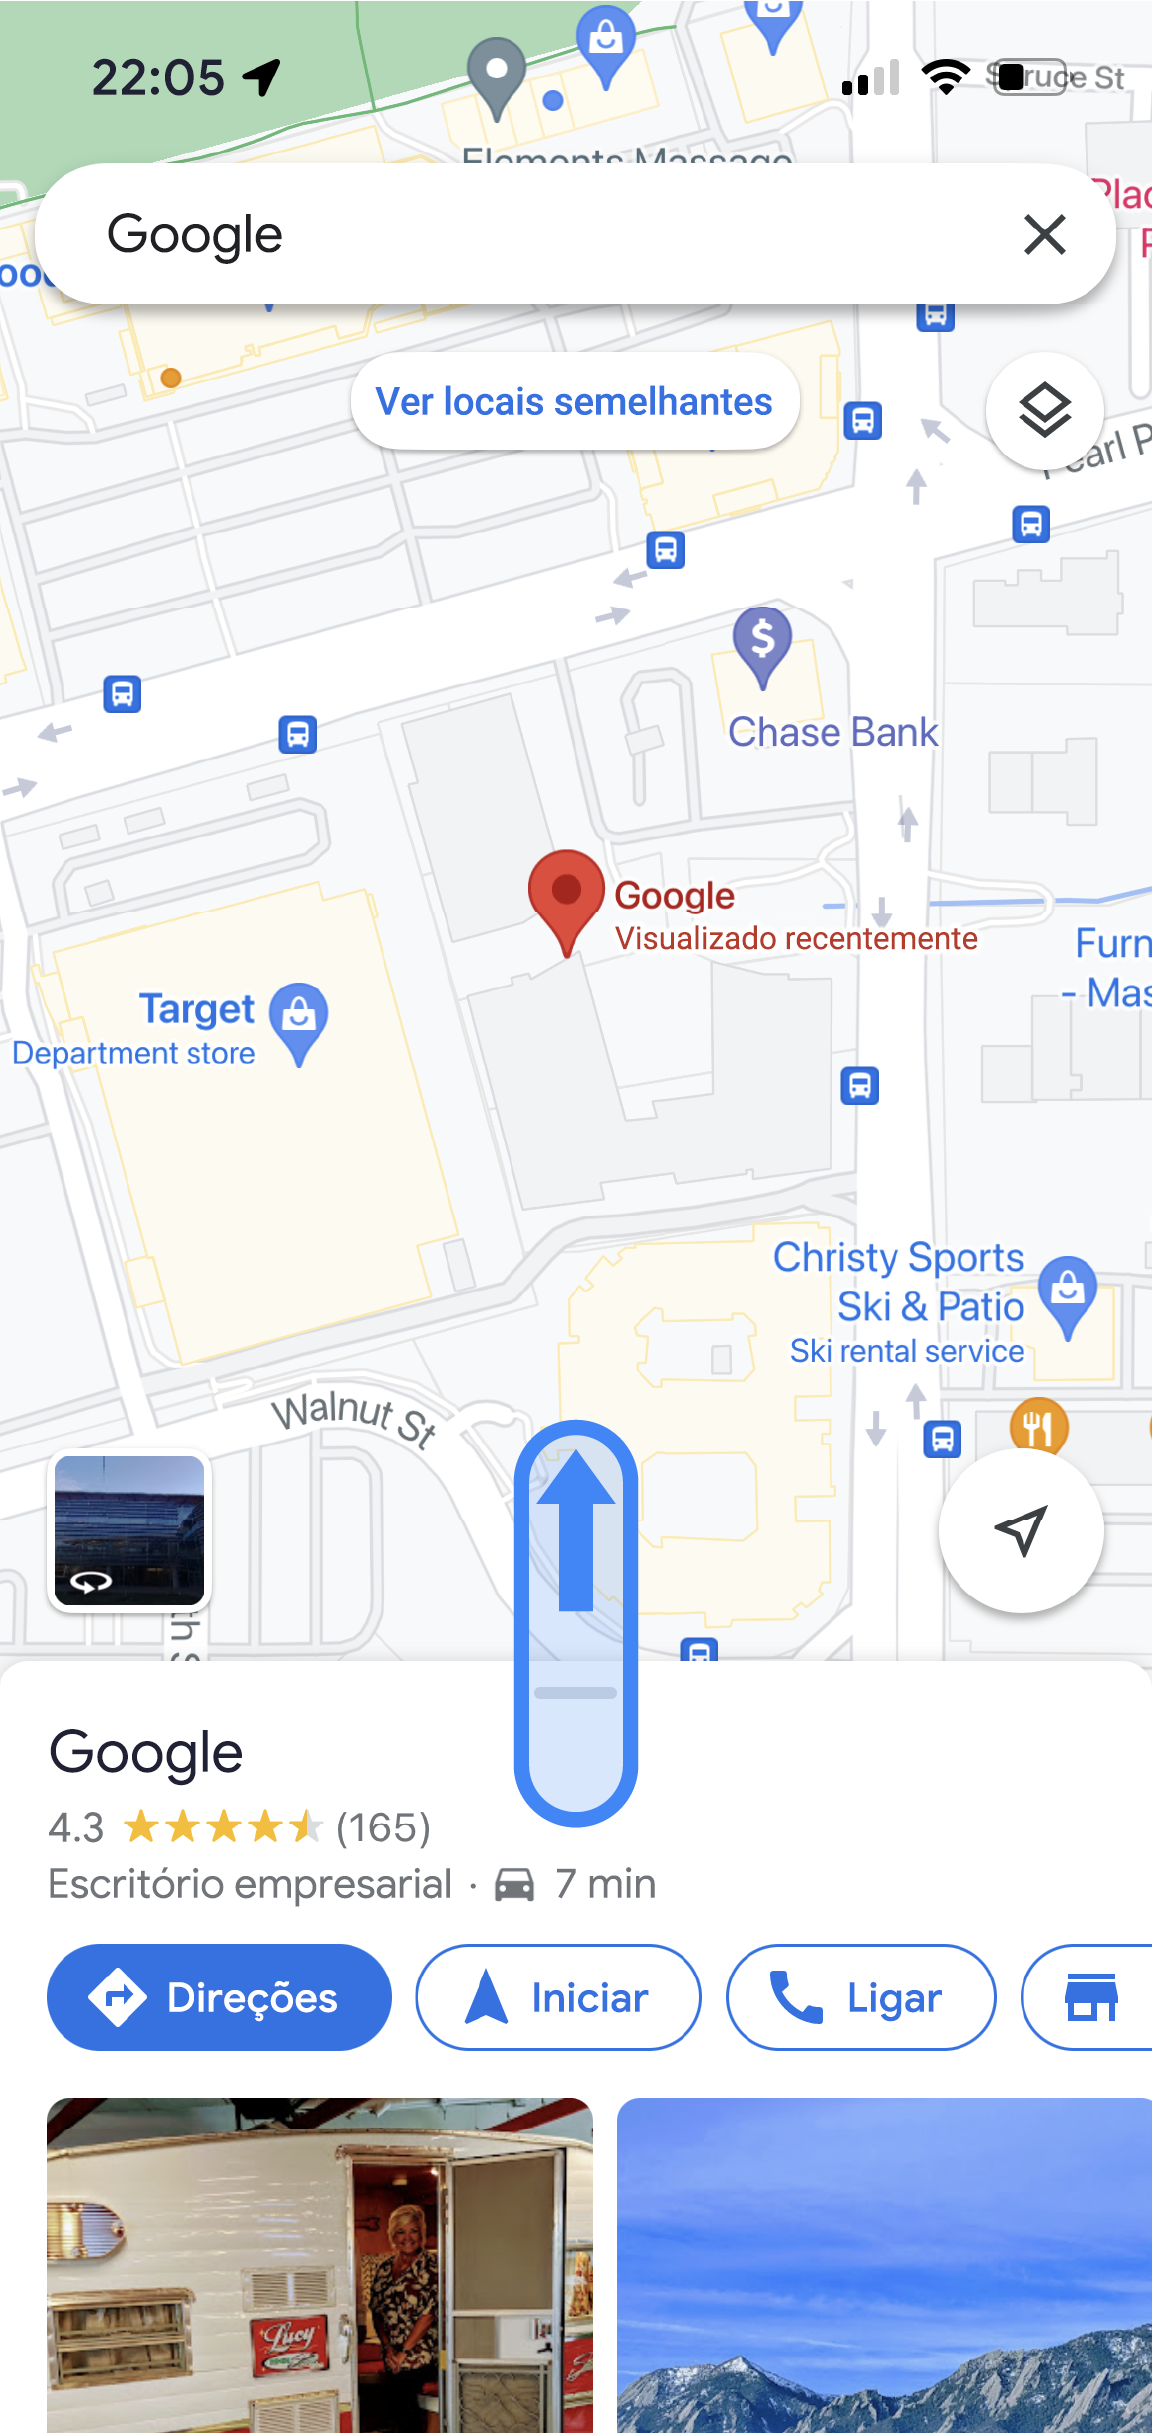 Na app Google Maps, é apresentada a localização de um escritório da Google. Na parte inferior da app, o nome da localização e as classificações médias são apresentados com botões para obter direções, iniciar a navegação, ligar e muito mais.